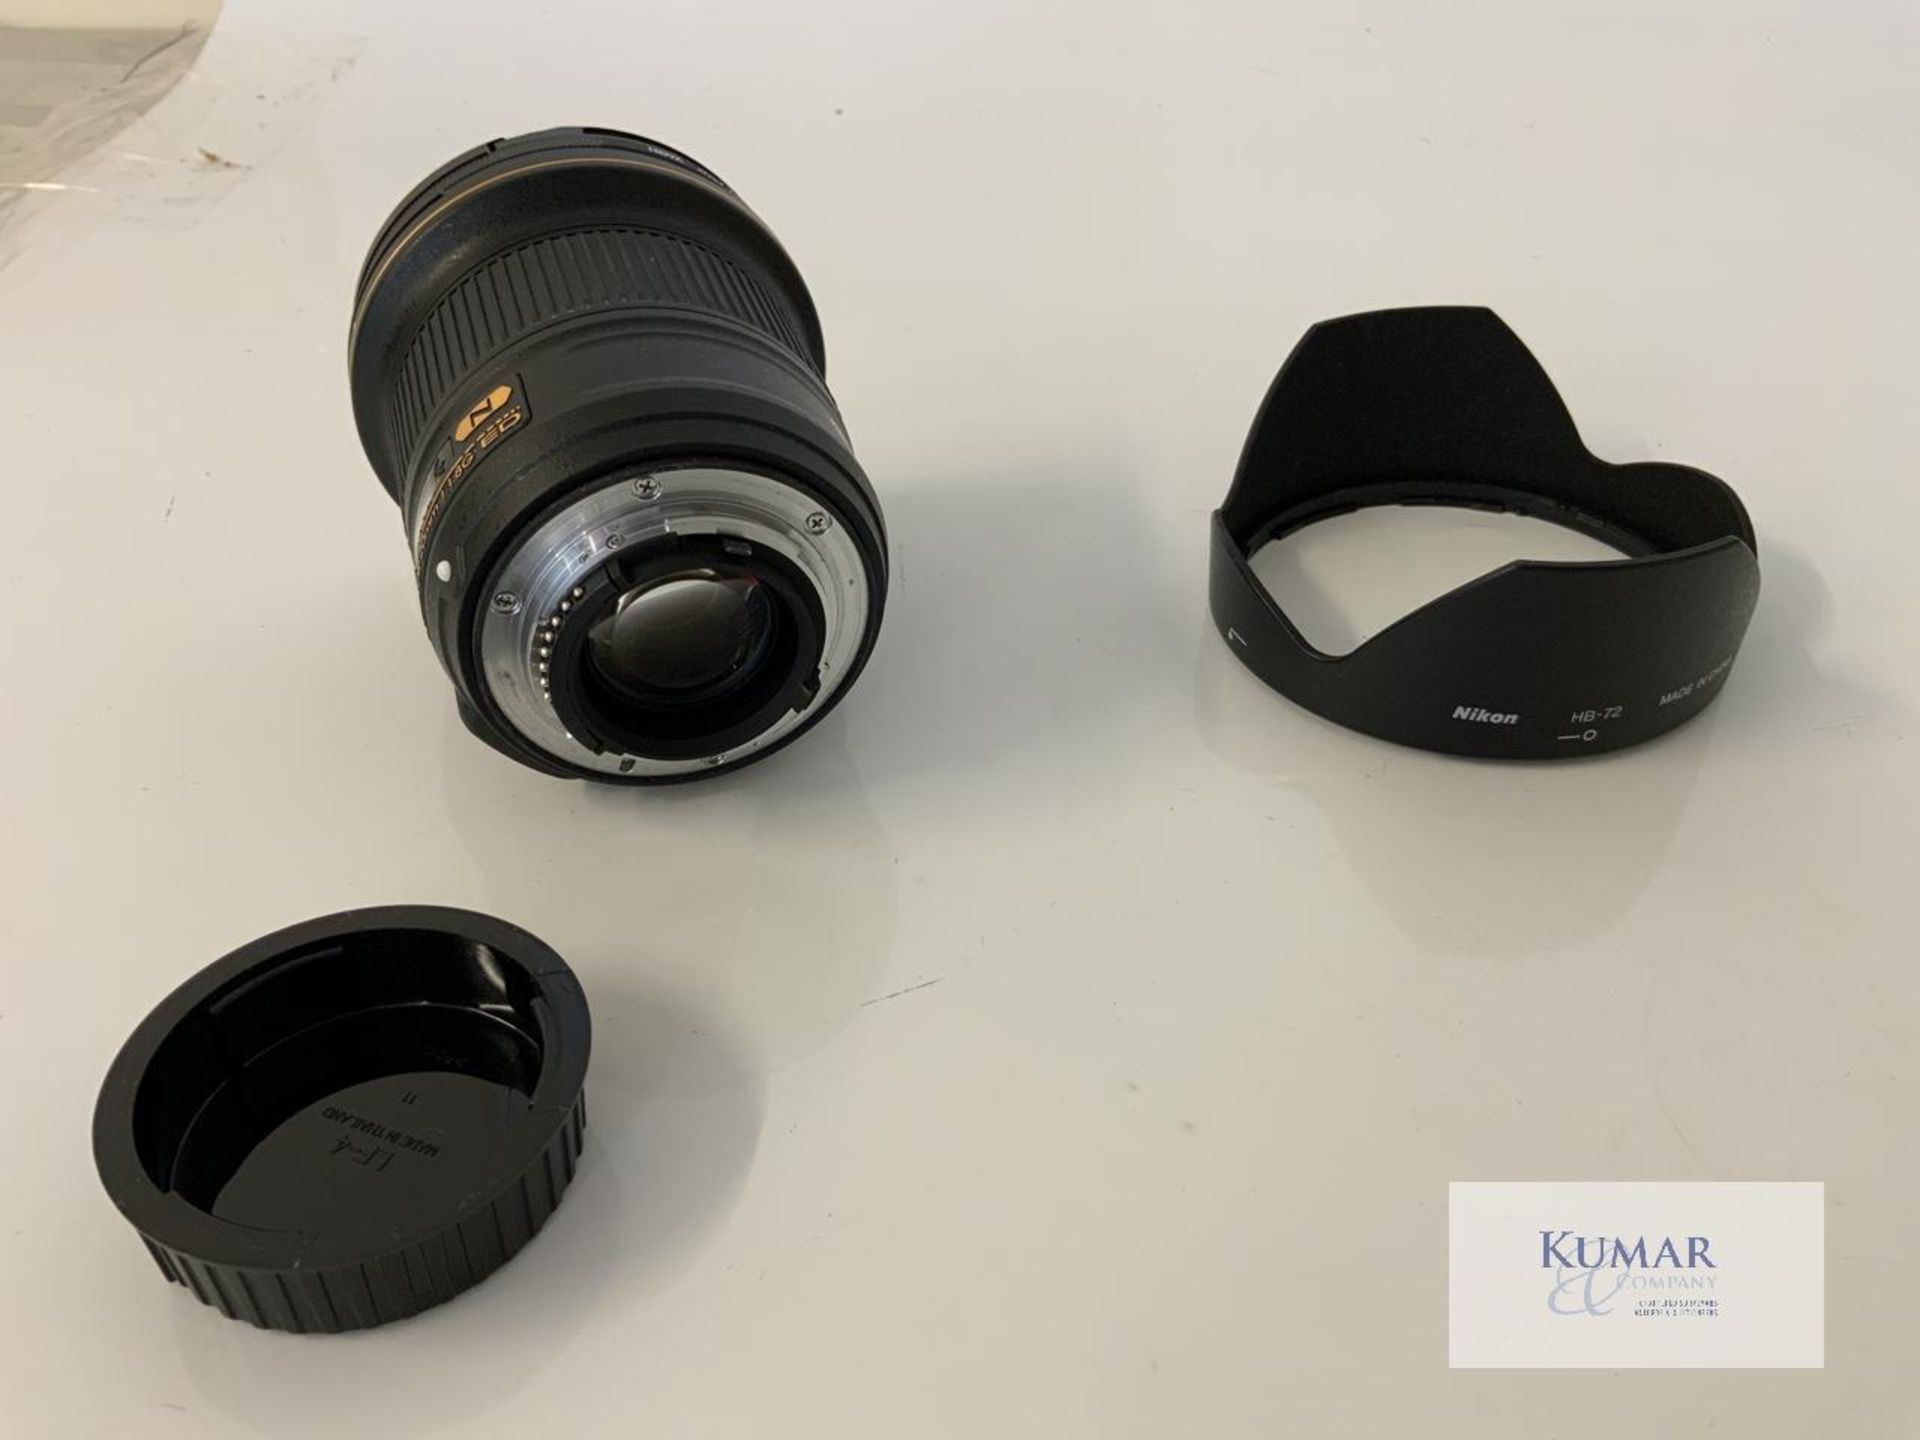 Nikon AF-S Nikkor 20mm 1:1.8G ED Zoom Lens with Nikon HB 72 Lens Hood & Carry Case - Image 6 of 10